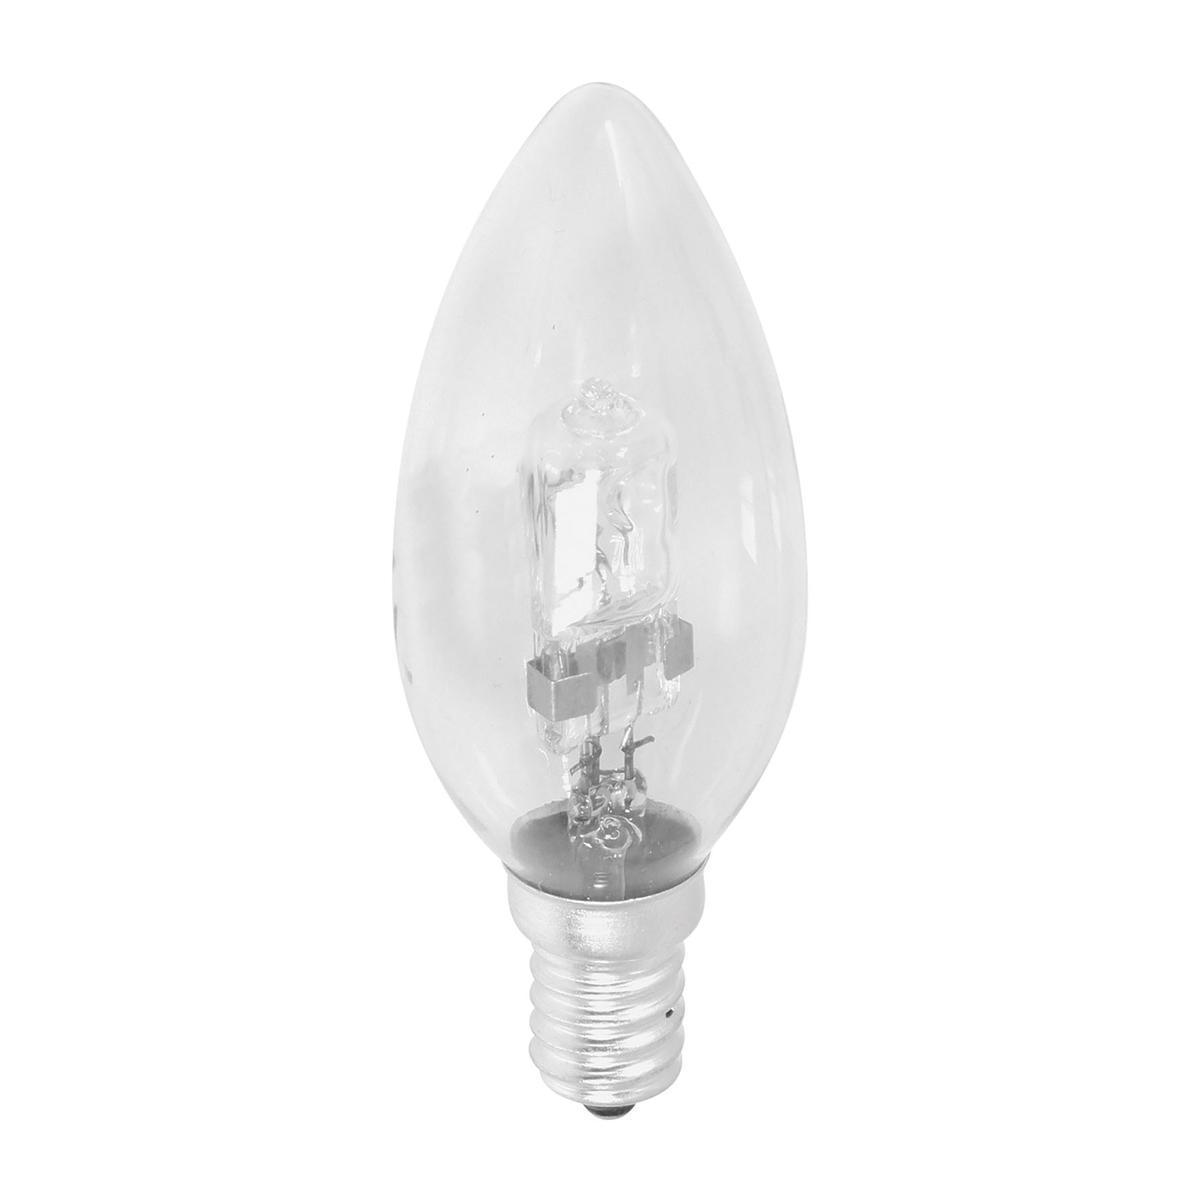 Ampoule halogène bougie E14 - 10 x 3.5 x 3.5 cm - Transparent